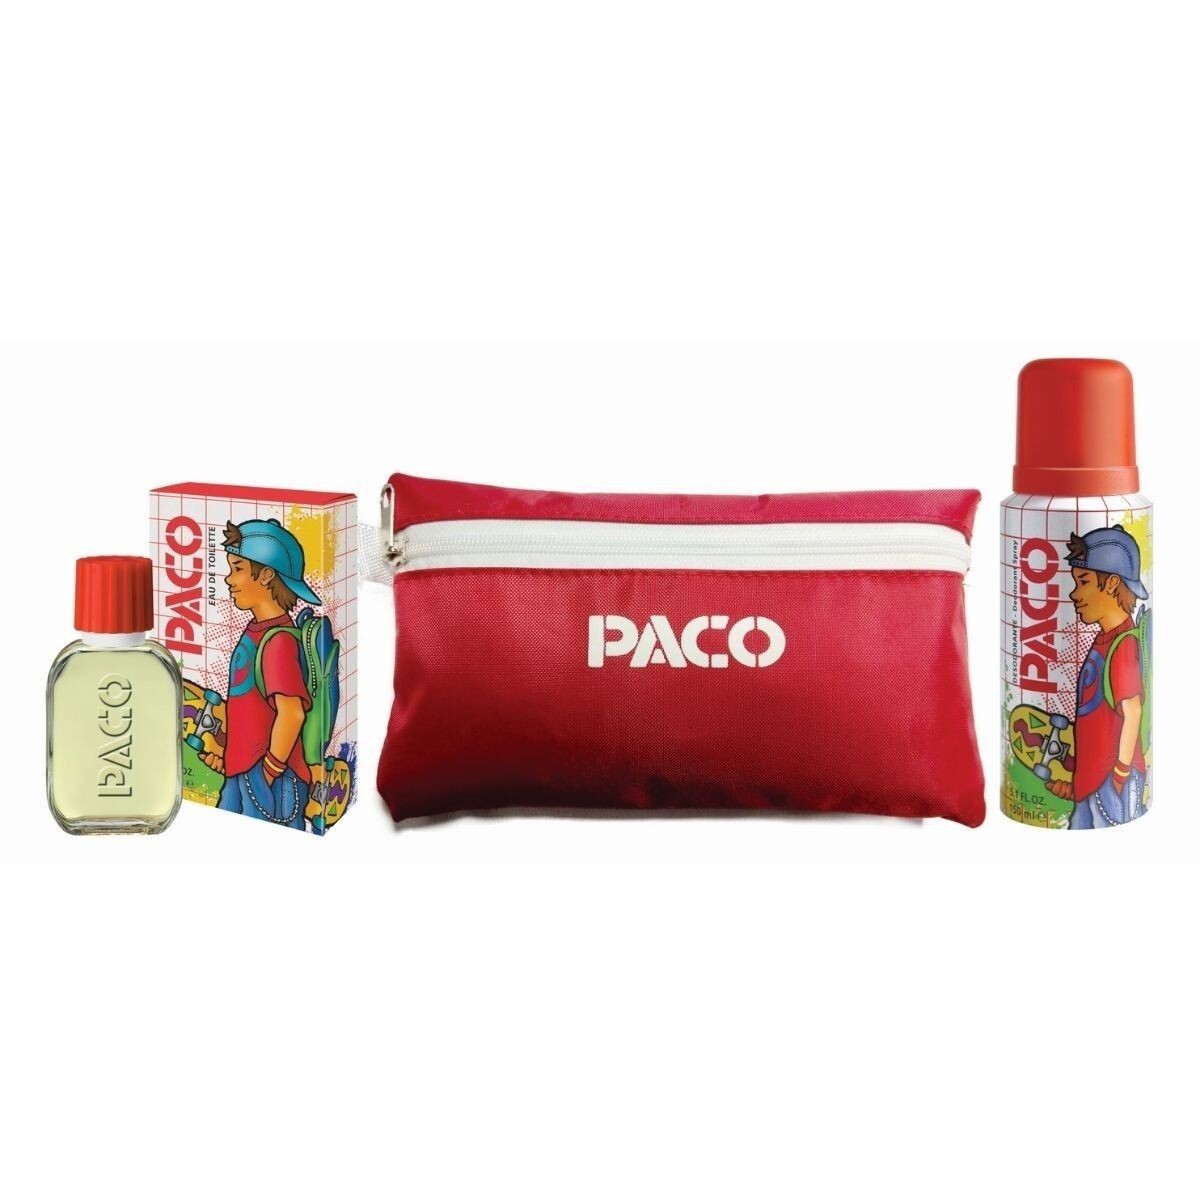 Colonia Paco Clásica 60 ML + Pack Desodorante y Cartuchera 